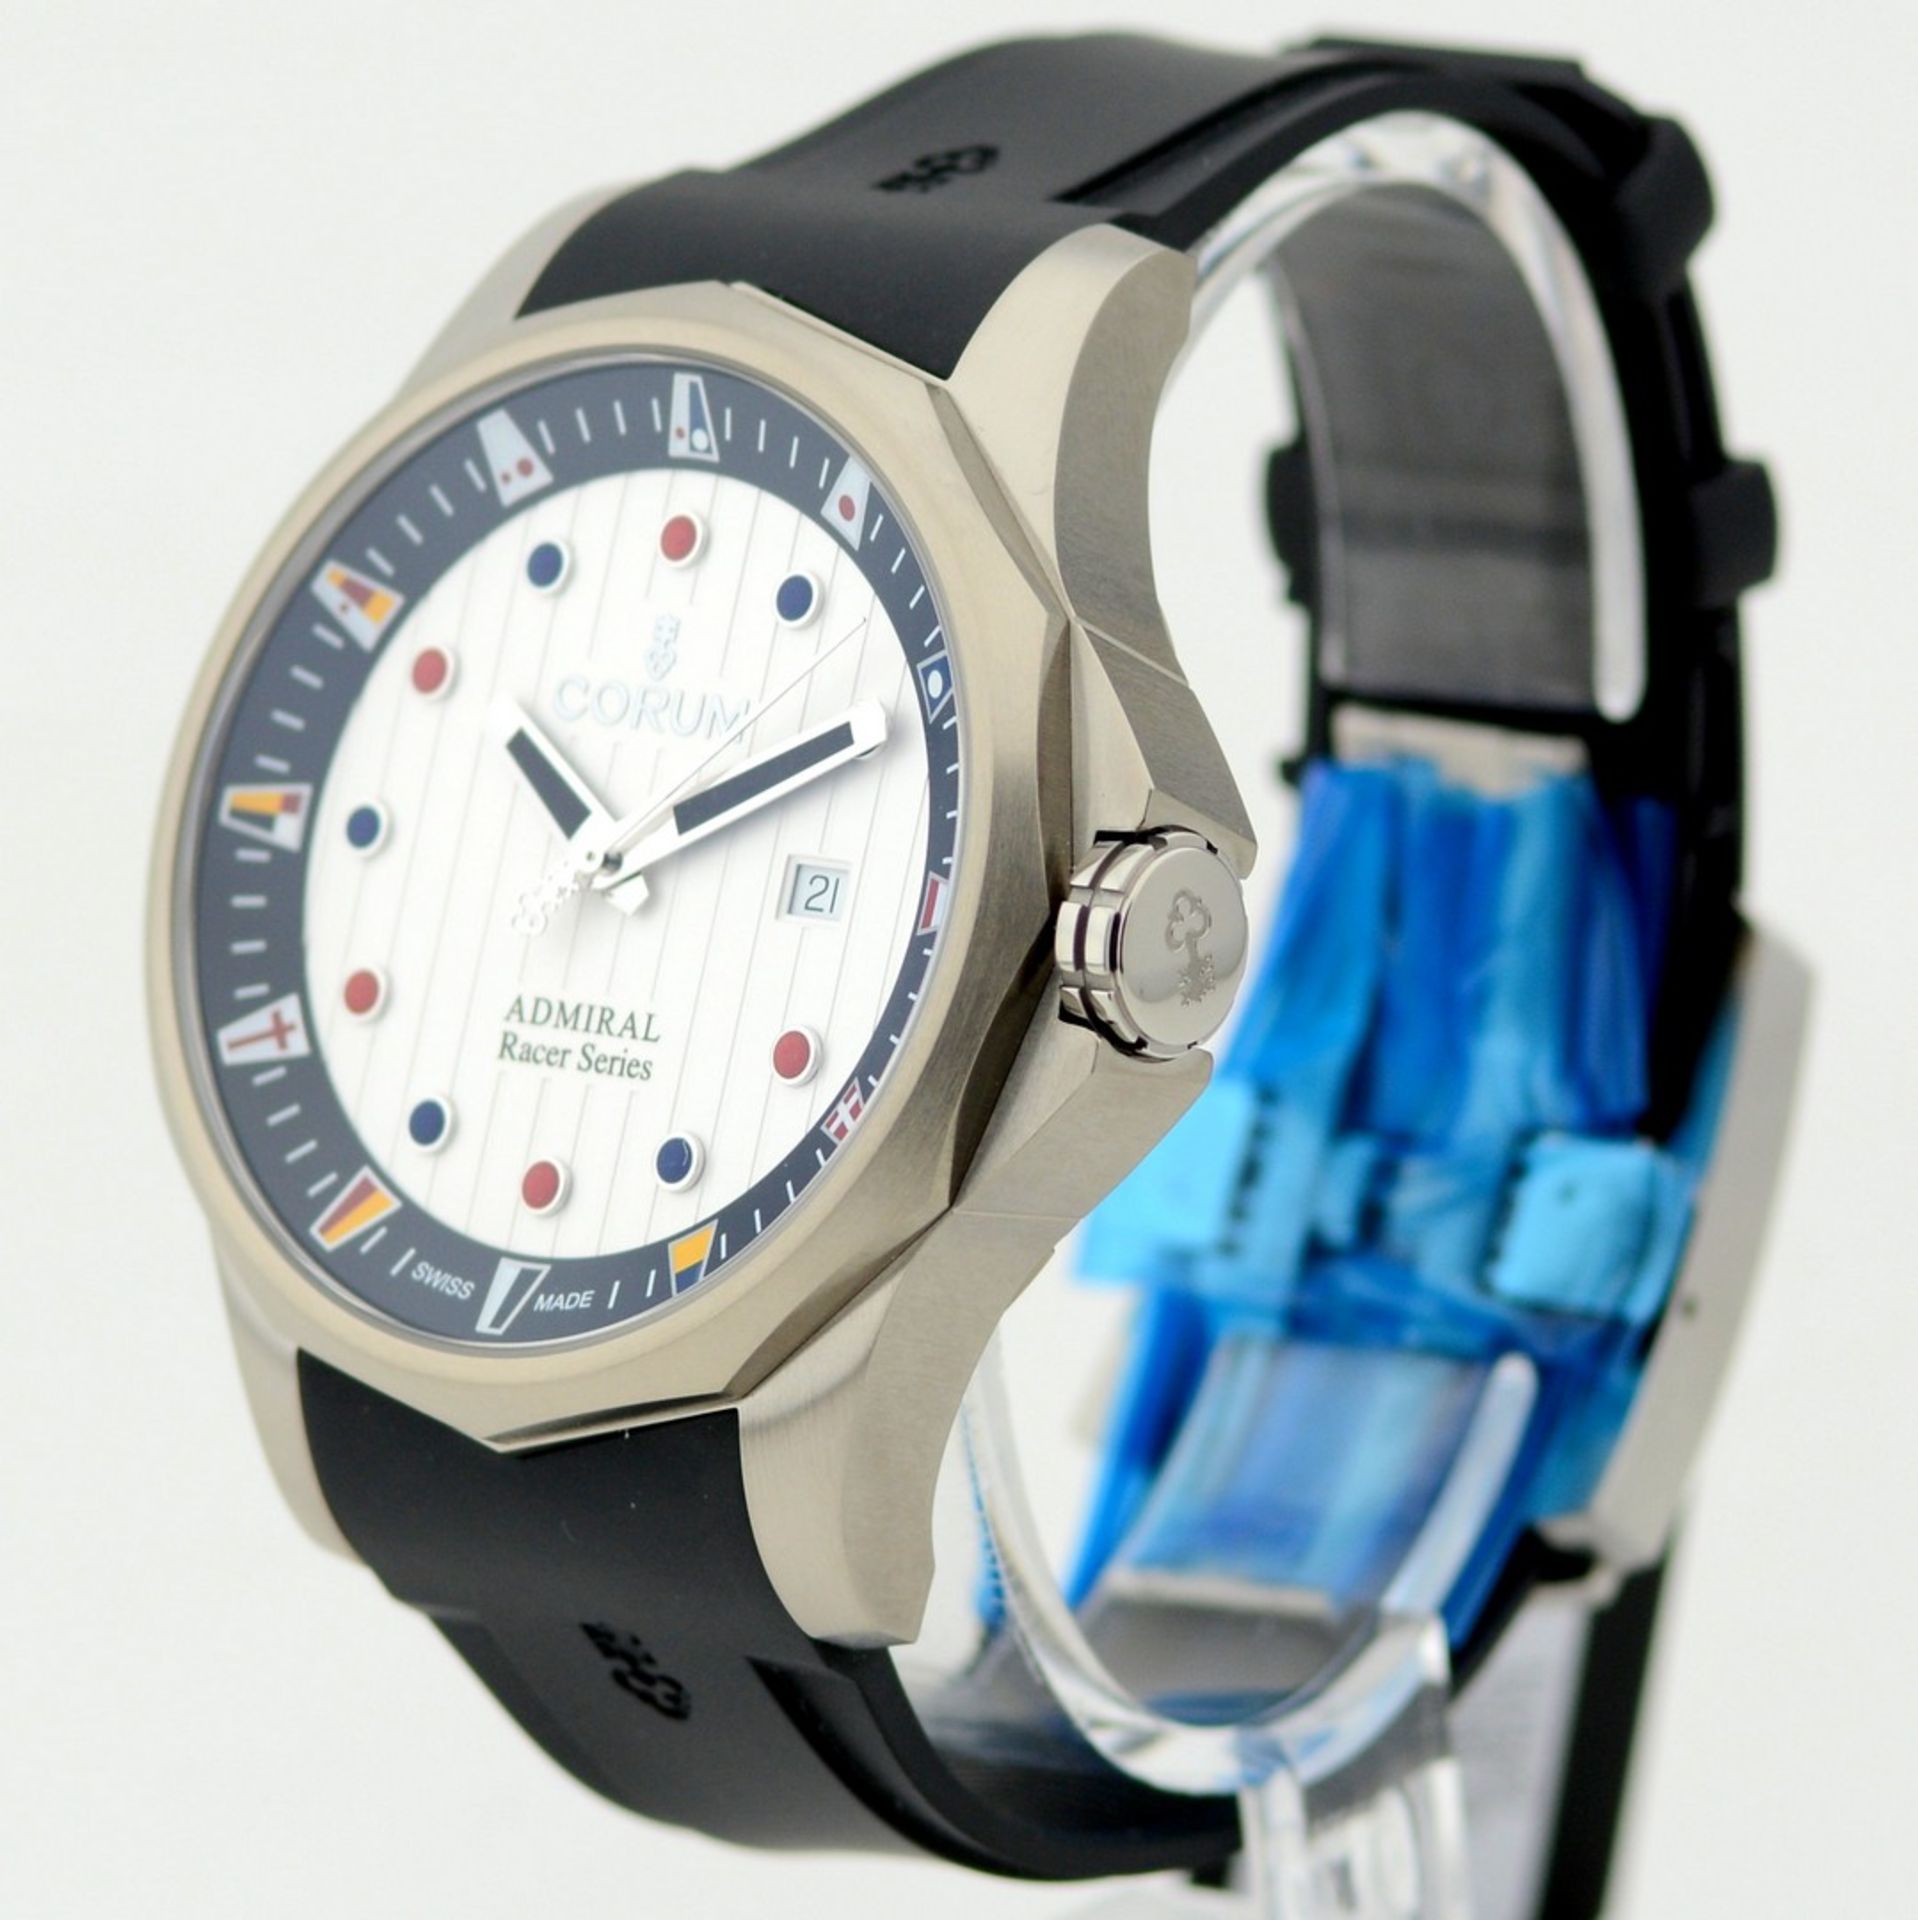 Corum / Admirals Cup Racer (Unworn) - Gentlmen's Steel Wrist Watch - Image 2 of 7